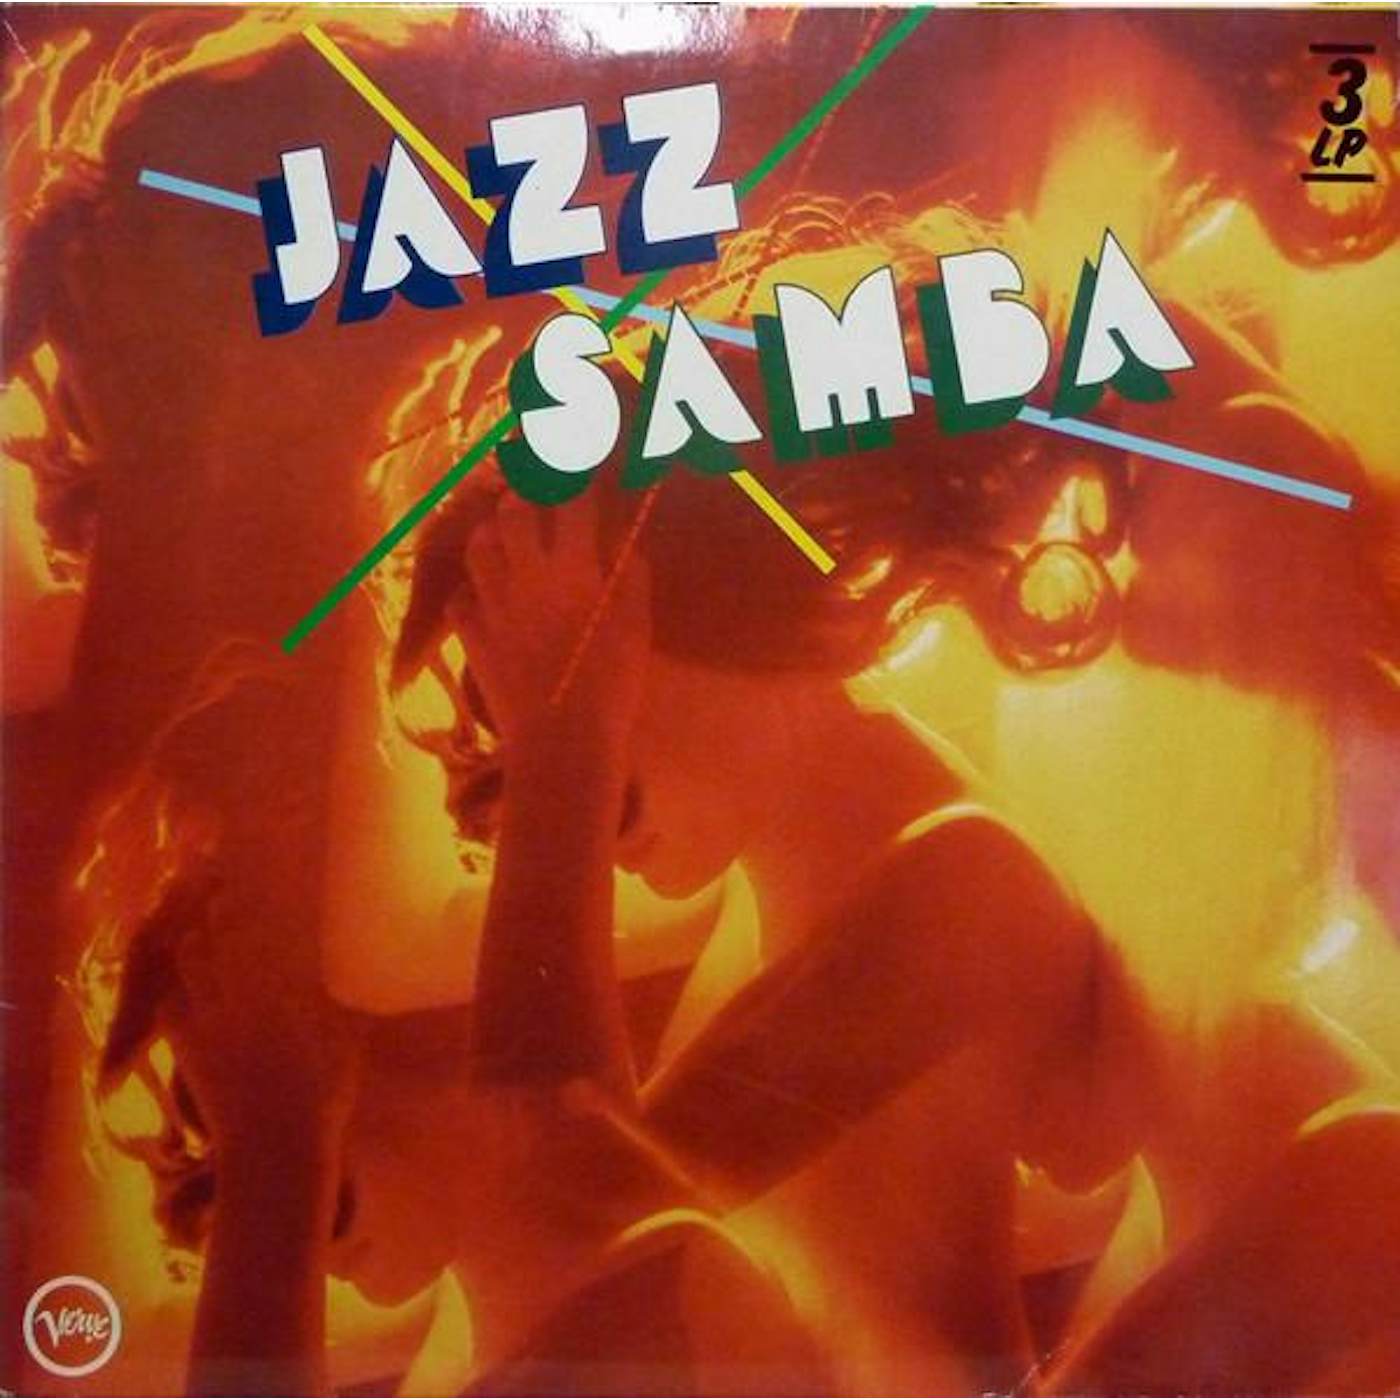 Stan Getz & Charlie Byrd JAZZ SAMBA Vinyl Record